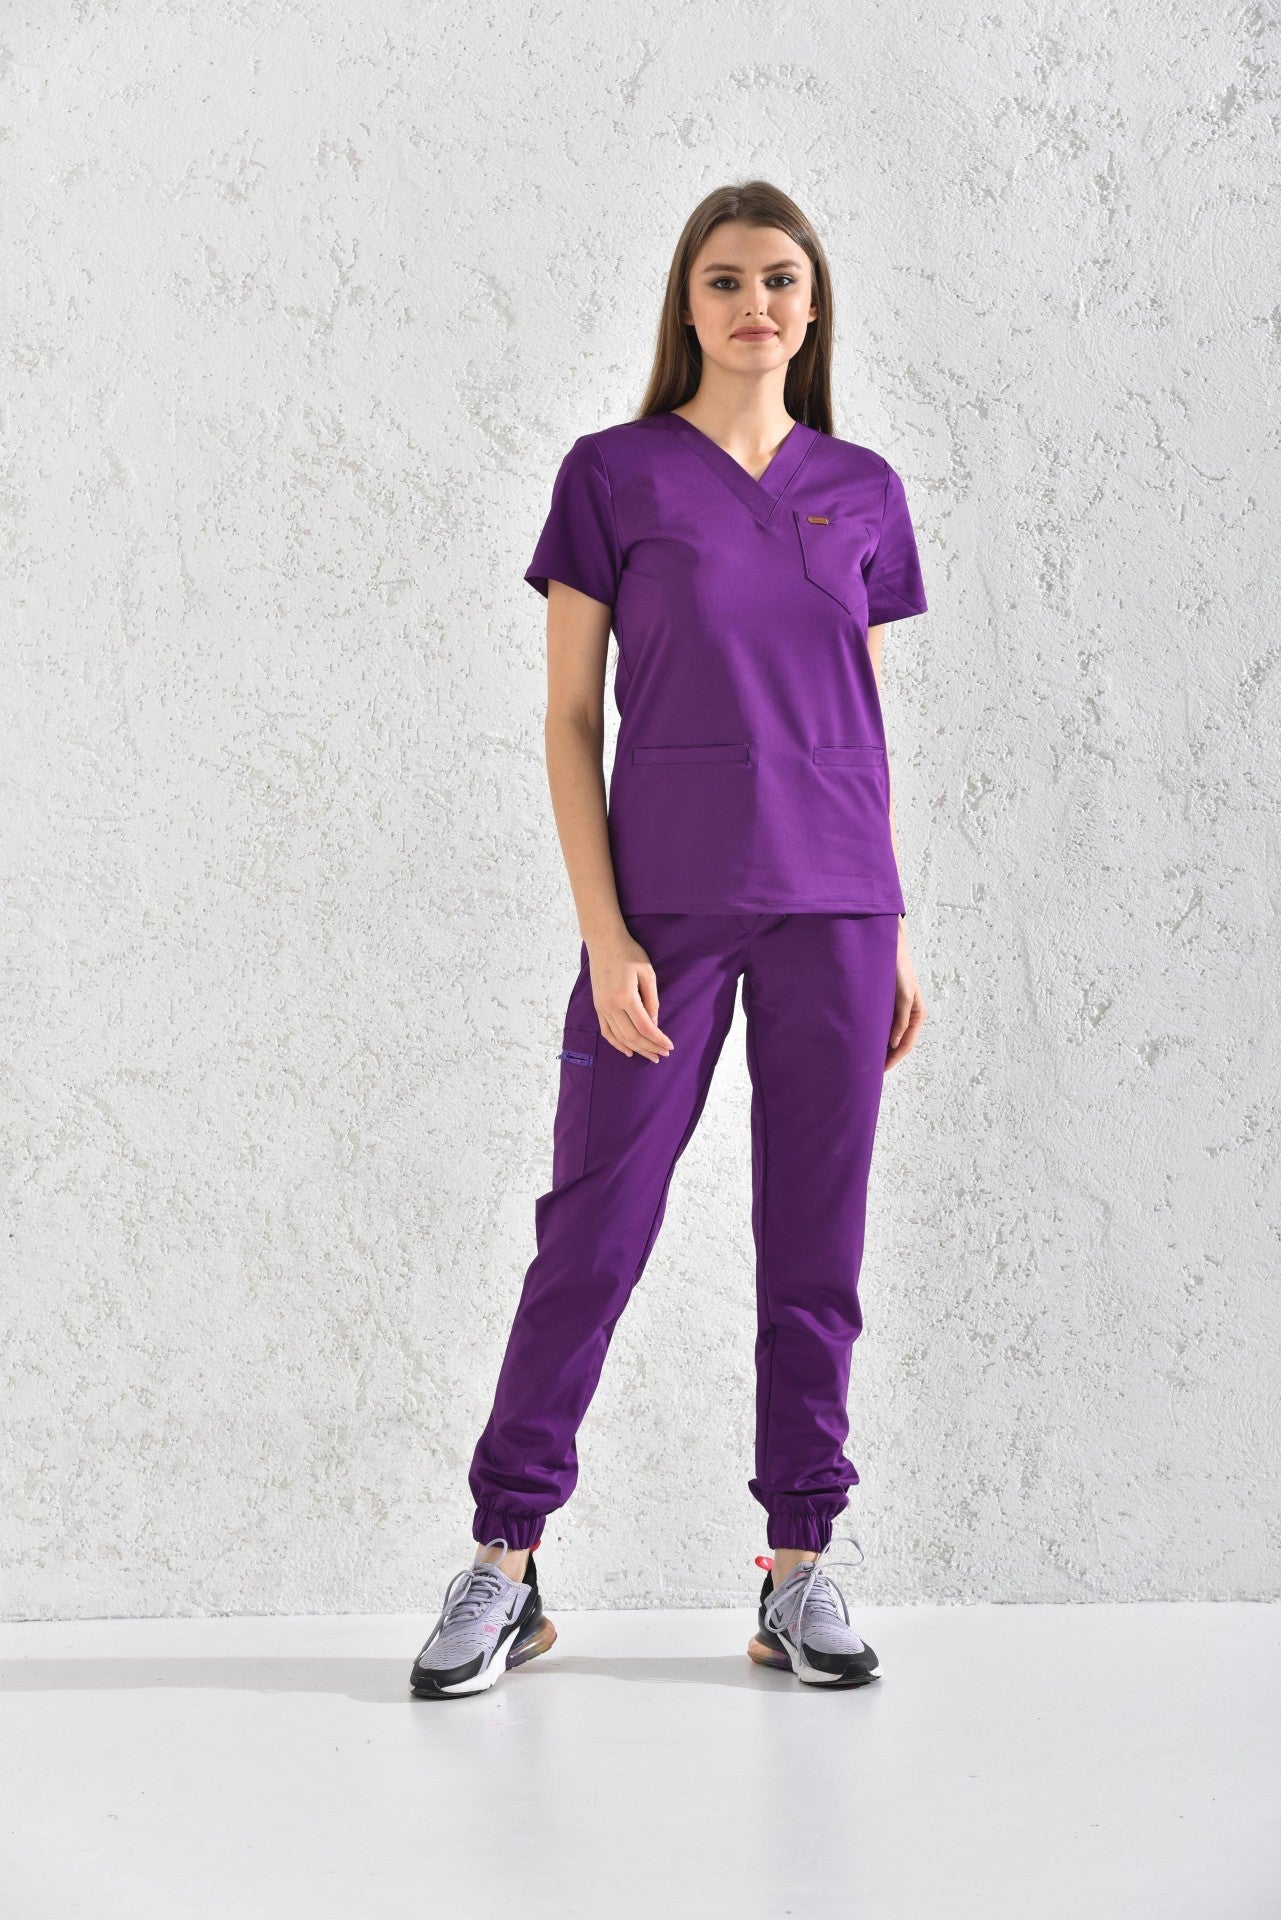 Femme en tunique médicale violet de Slimfit NEW, tenues médicales élégantes